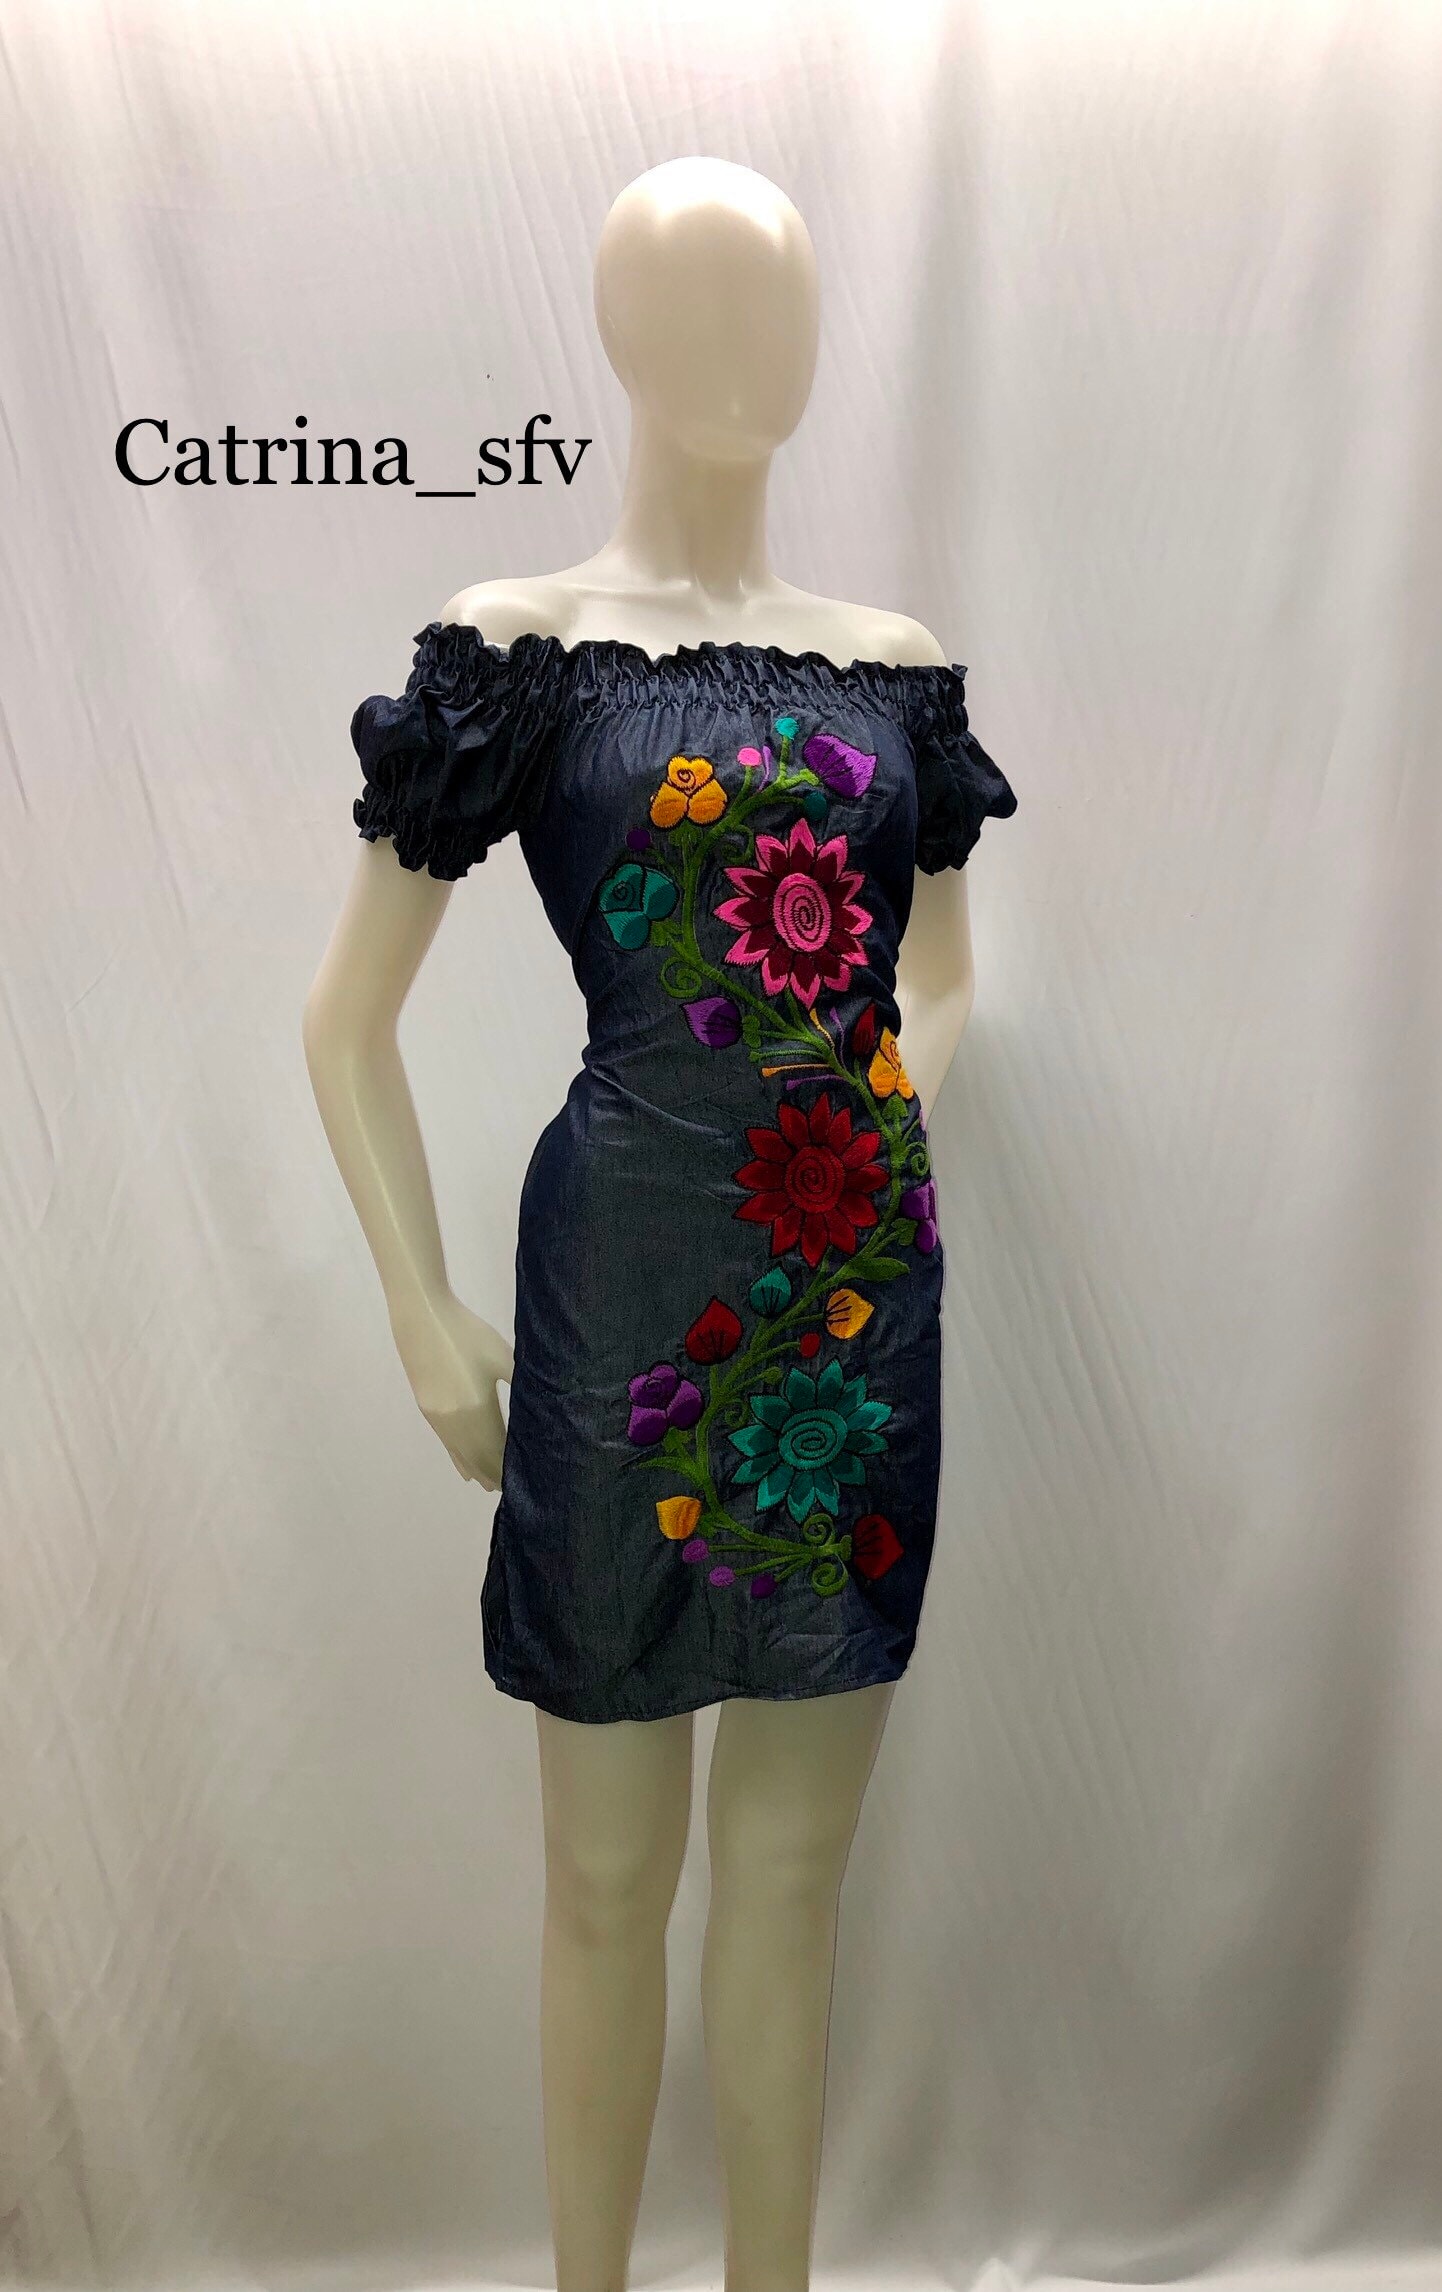 VESTIDO MEXICANO, vestido mexicano corto, vestido artesanal, bordado, vestido típico, vestido regional, vestido para fiesta mexicana ,ENVIO GRATIS EN ESTADOS UNIDOS